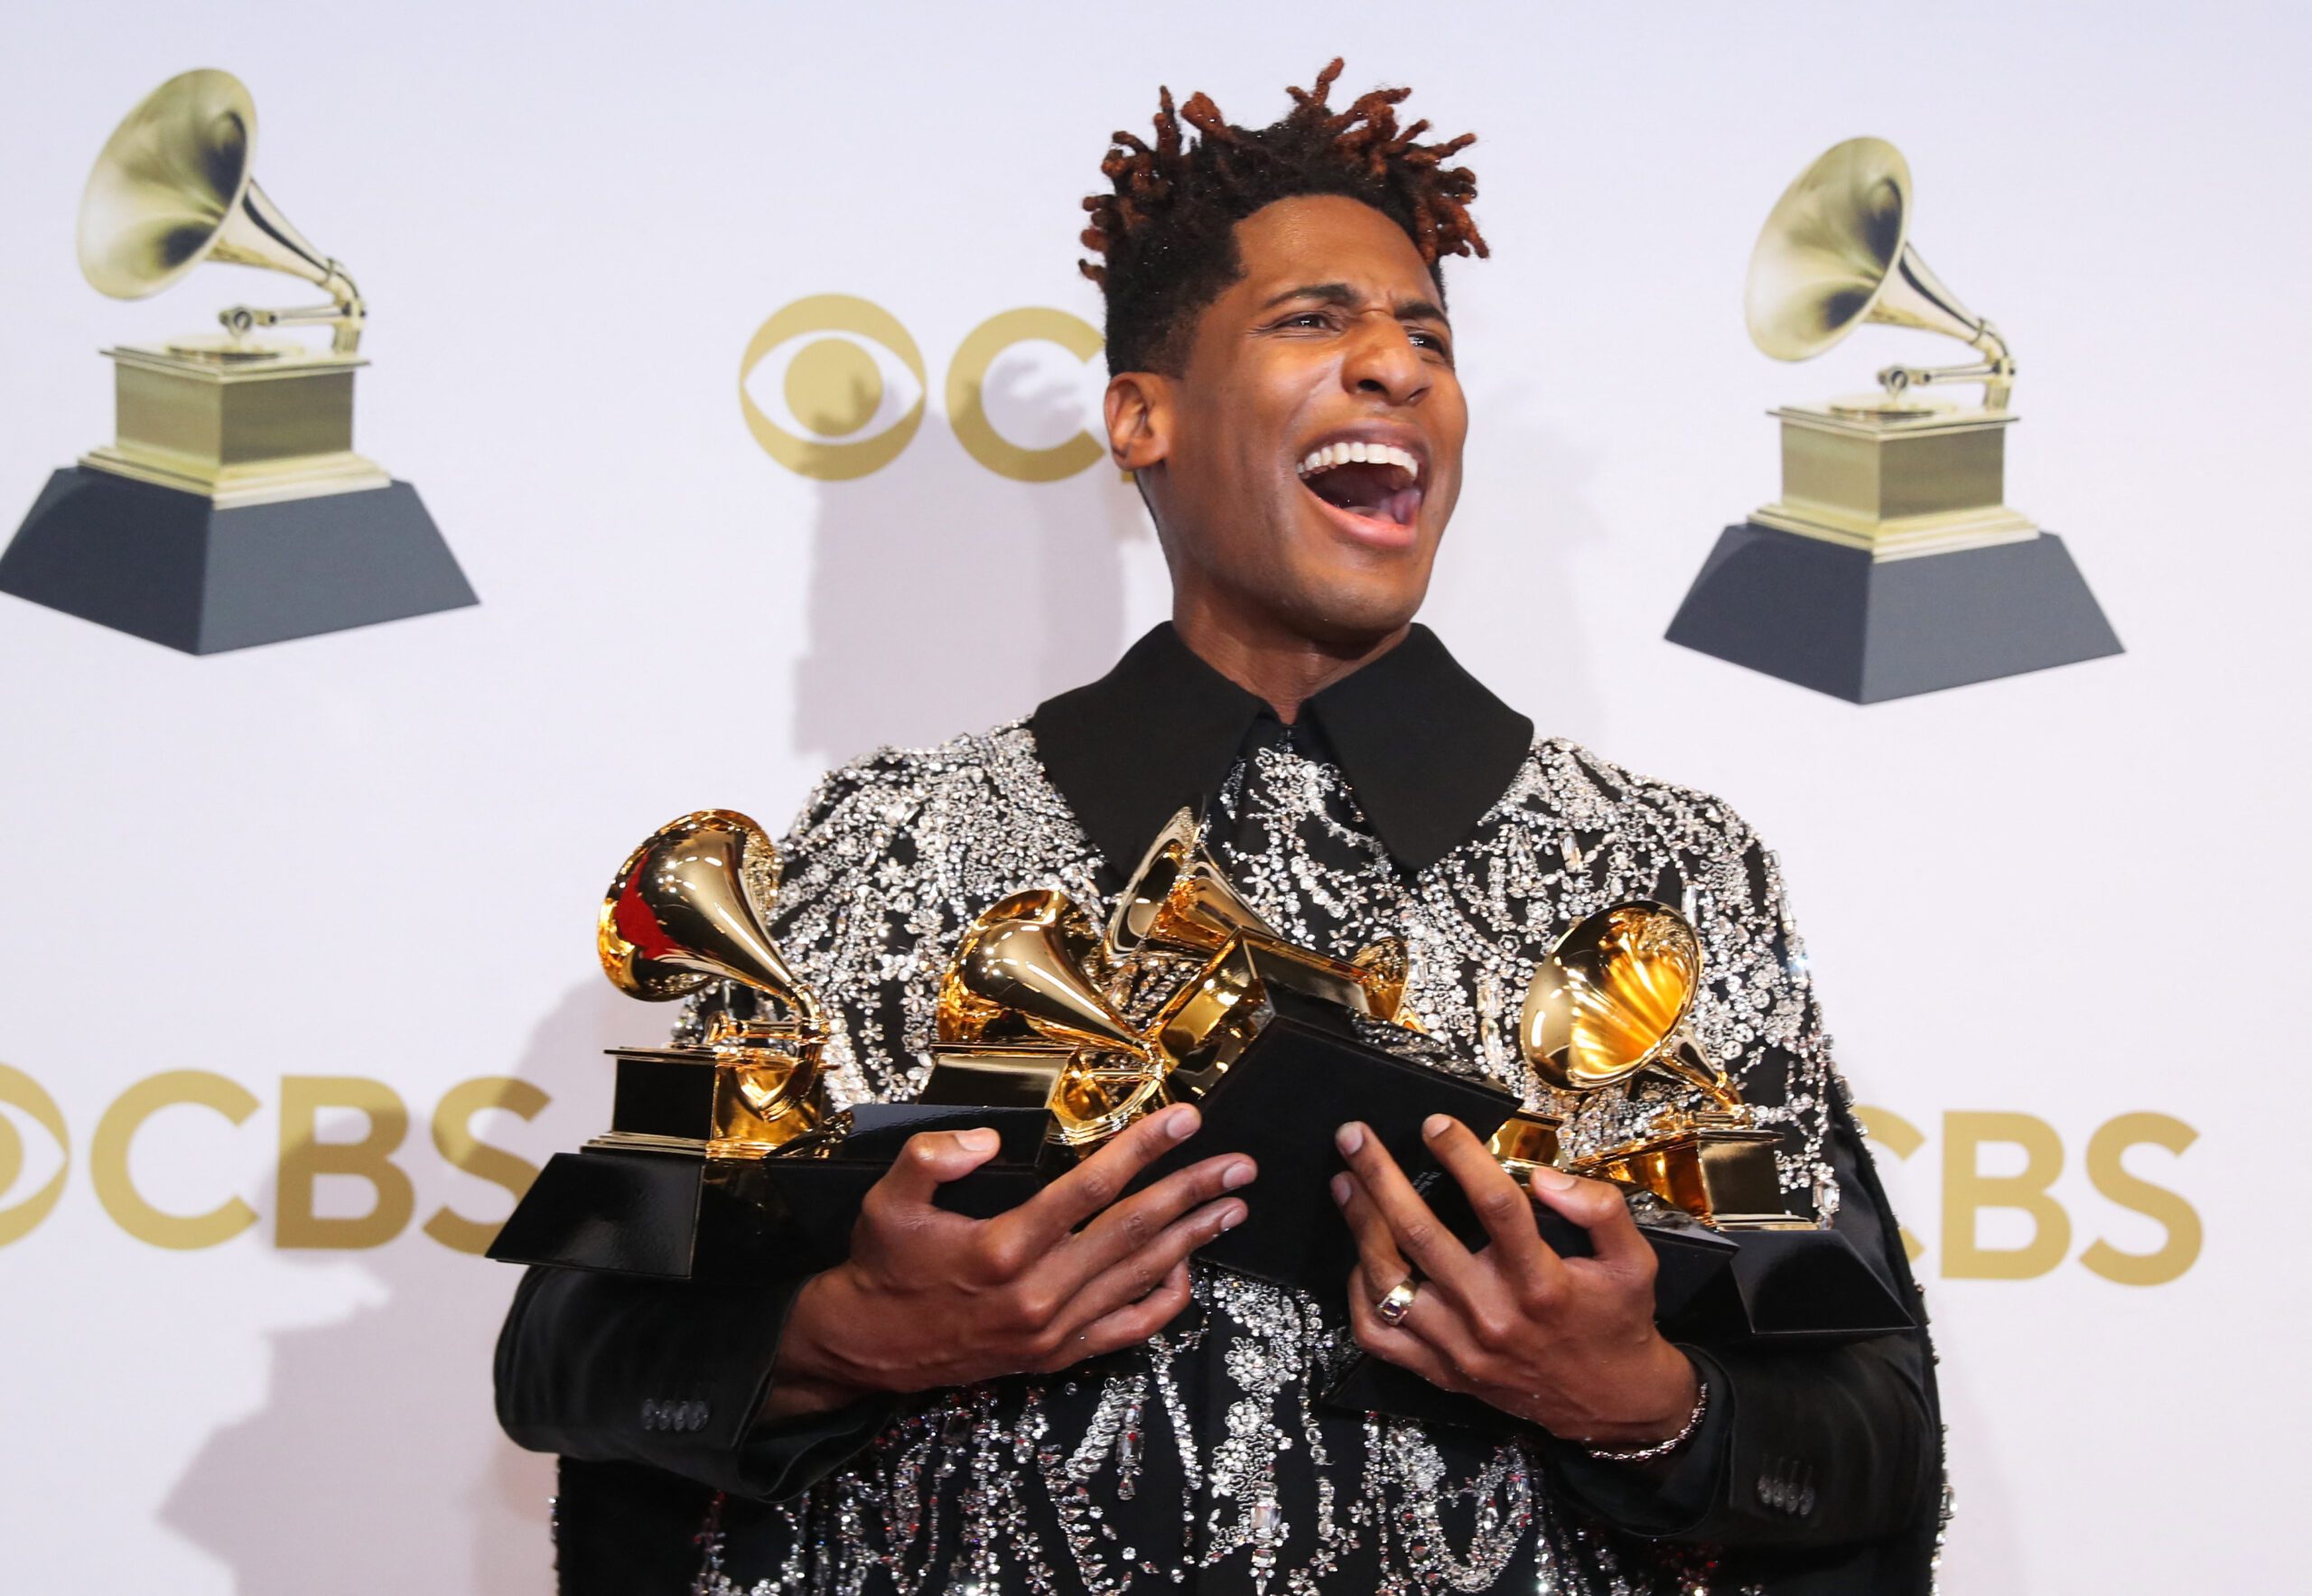 Grammy awards 2022 winners